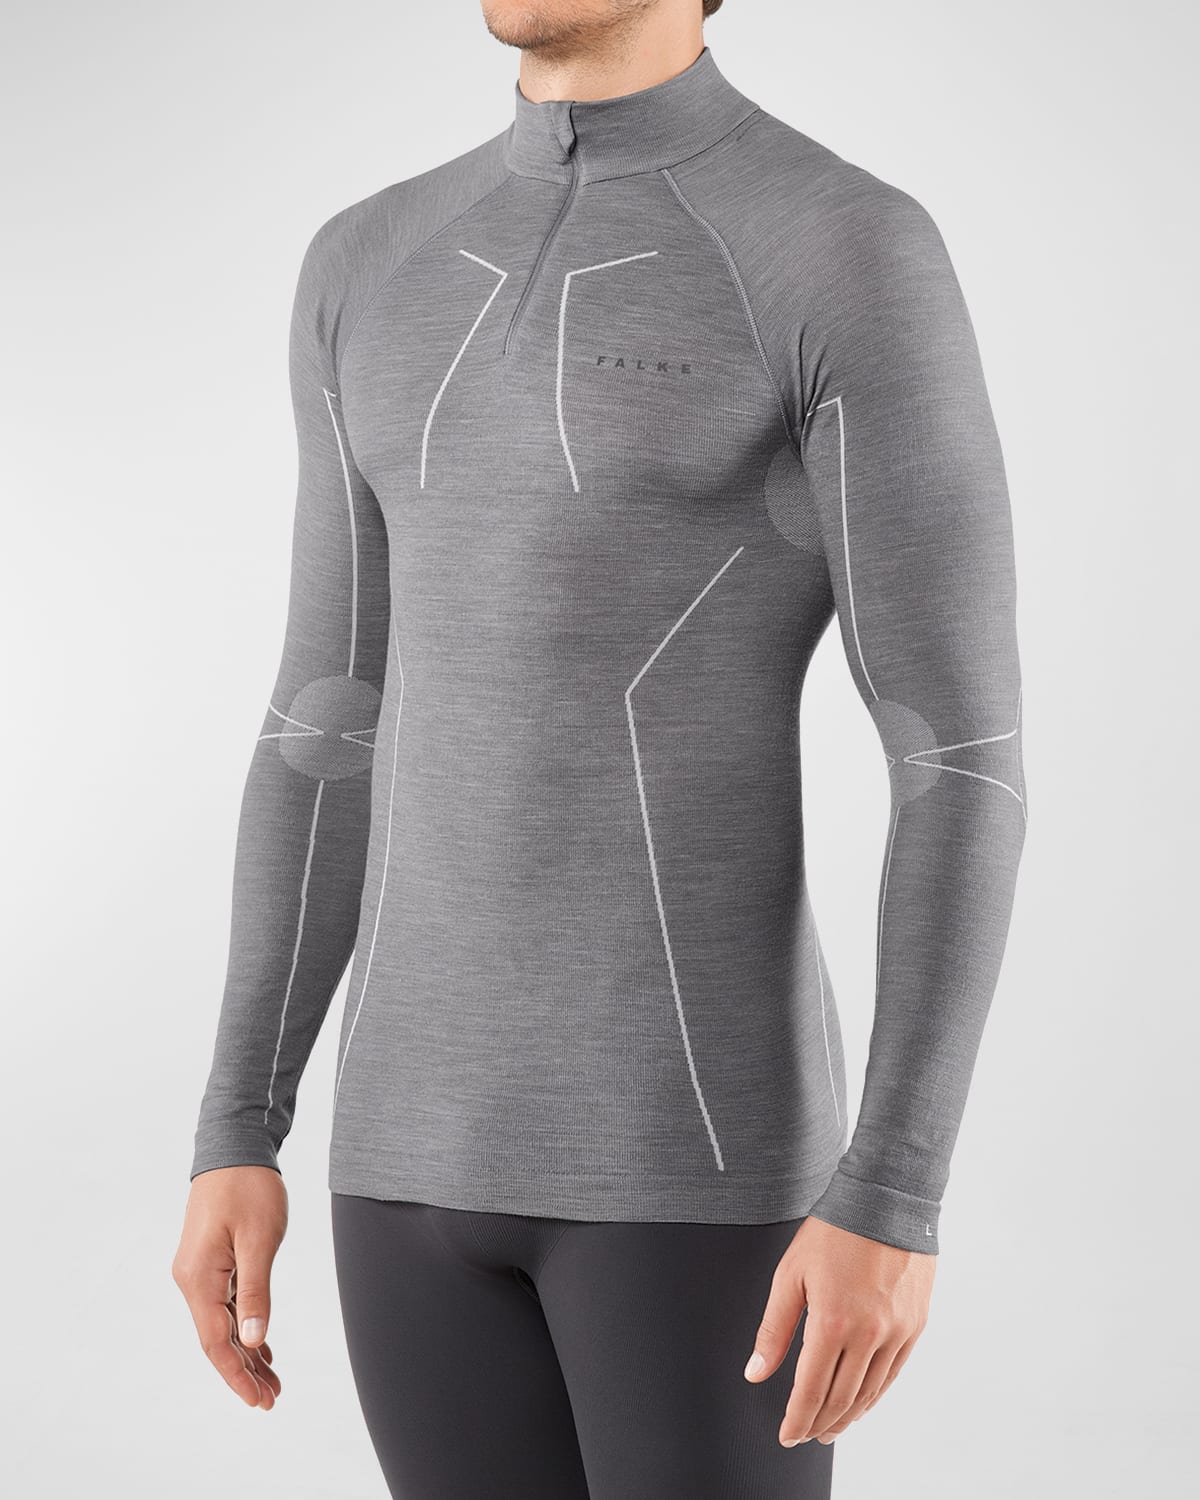 Falke Men's Wool Tech Long-sleeve Shirt In Grey Heather